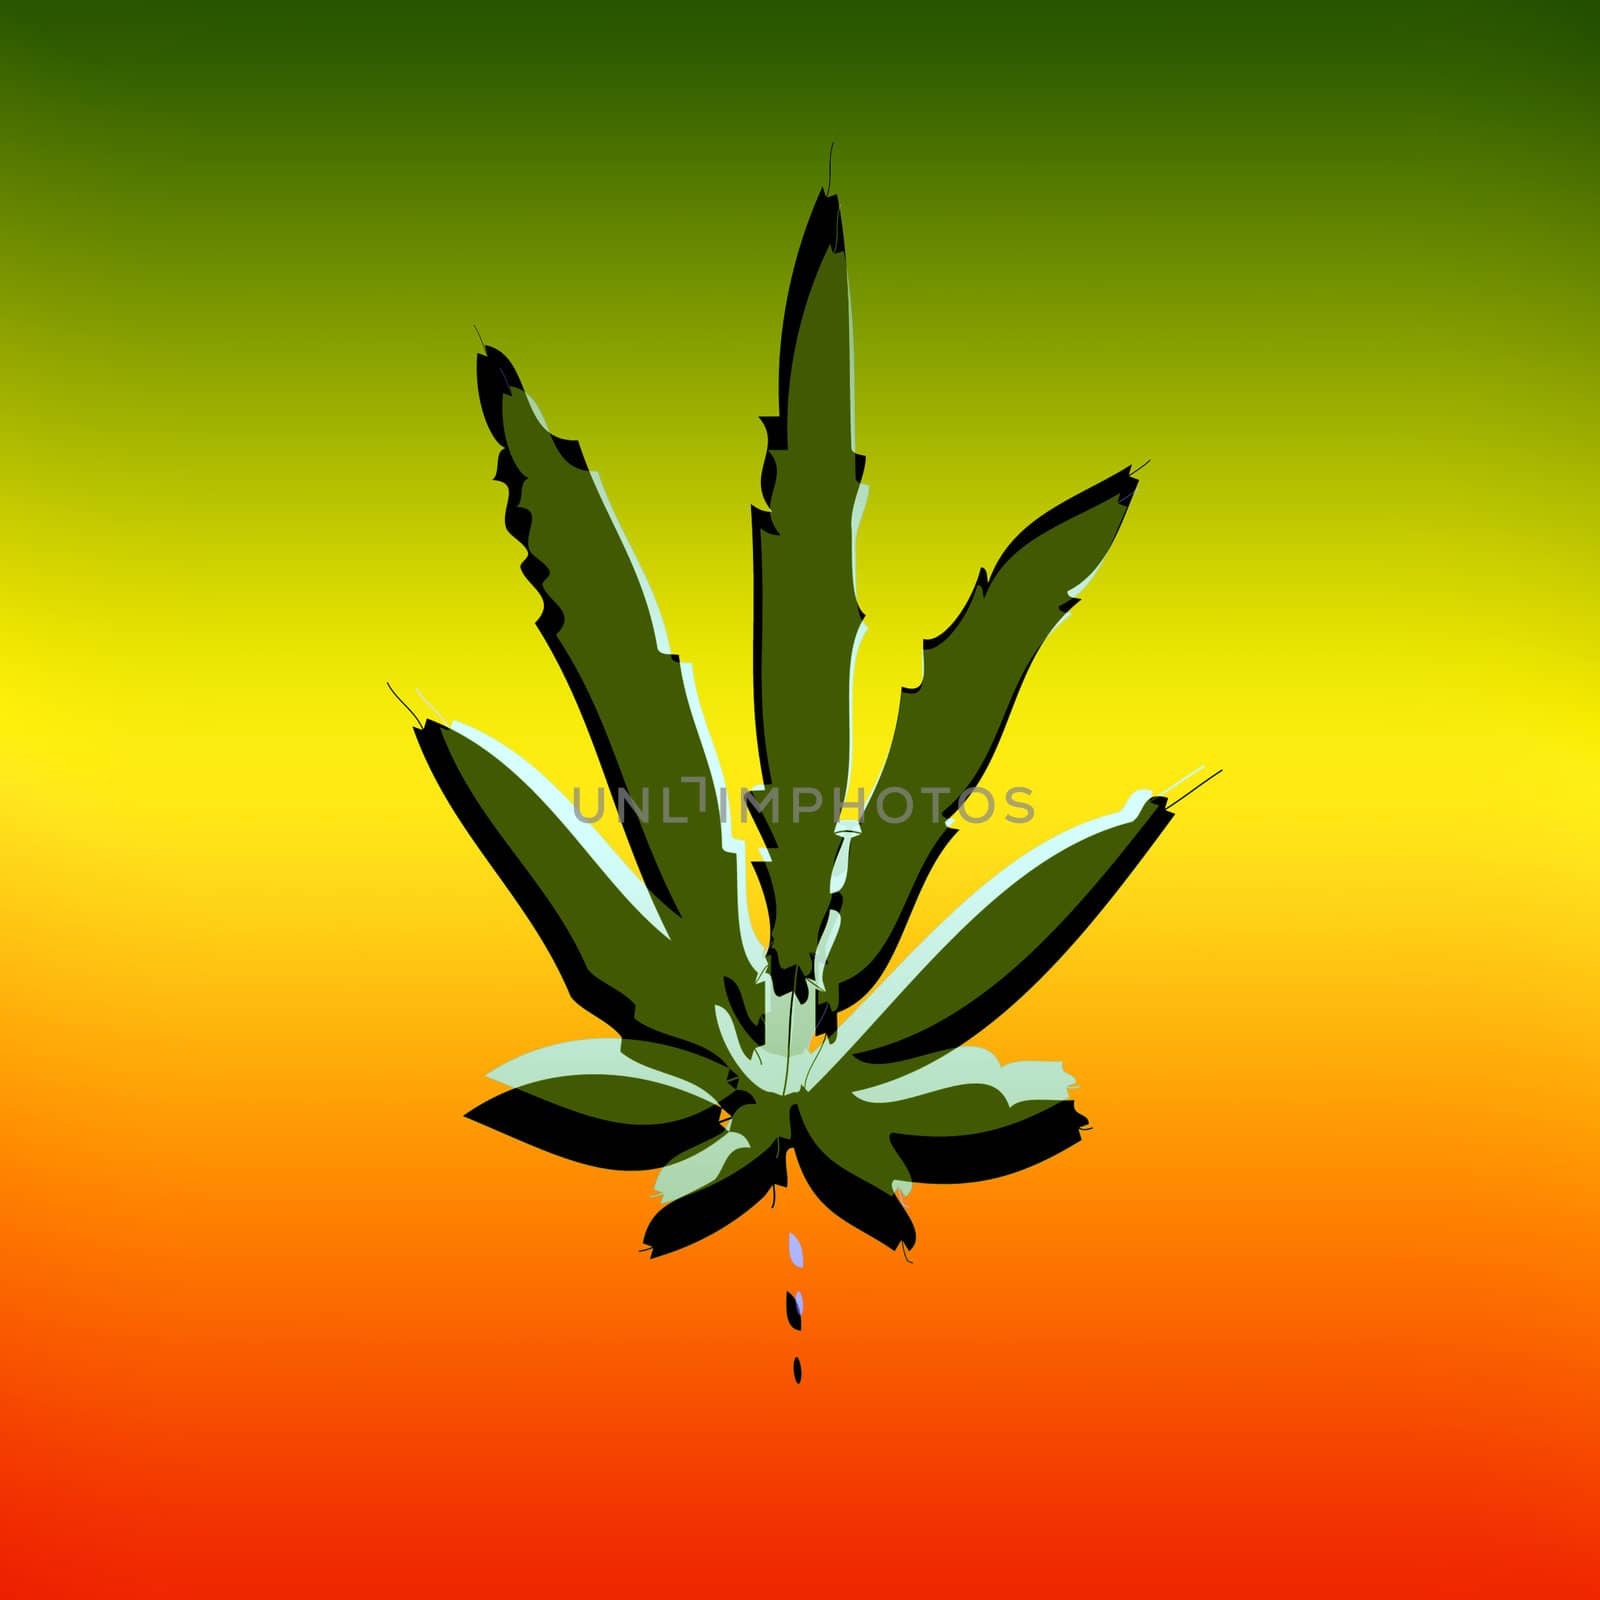 Computer designed illustration - marijuana leaf 